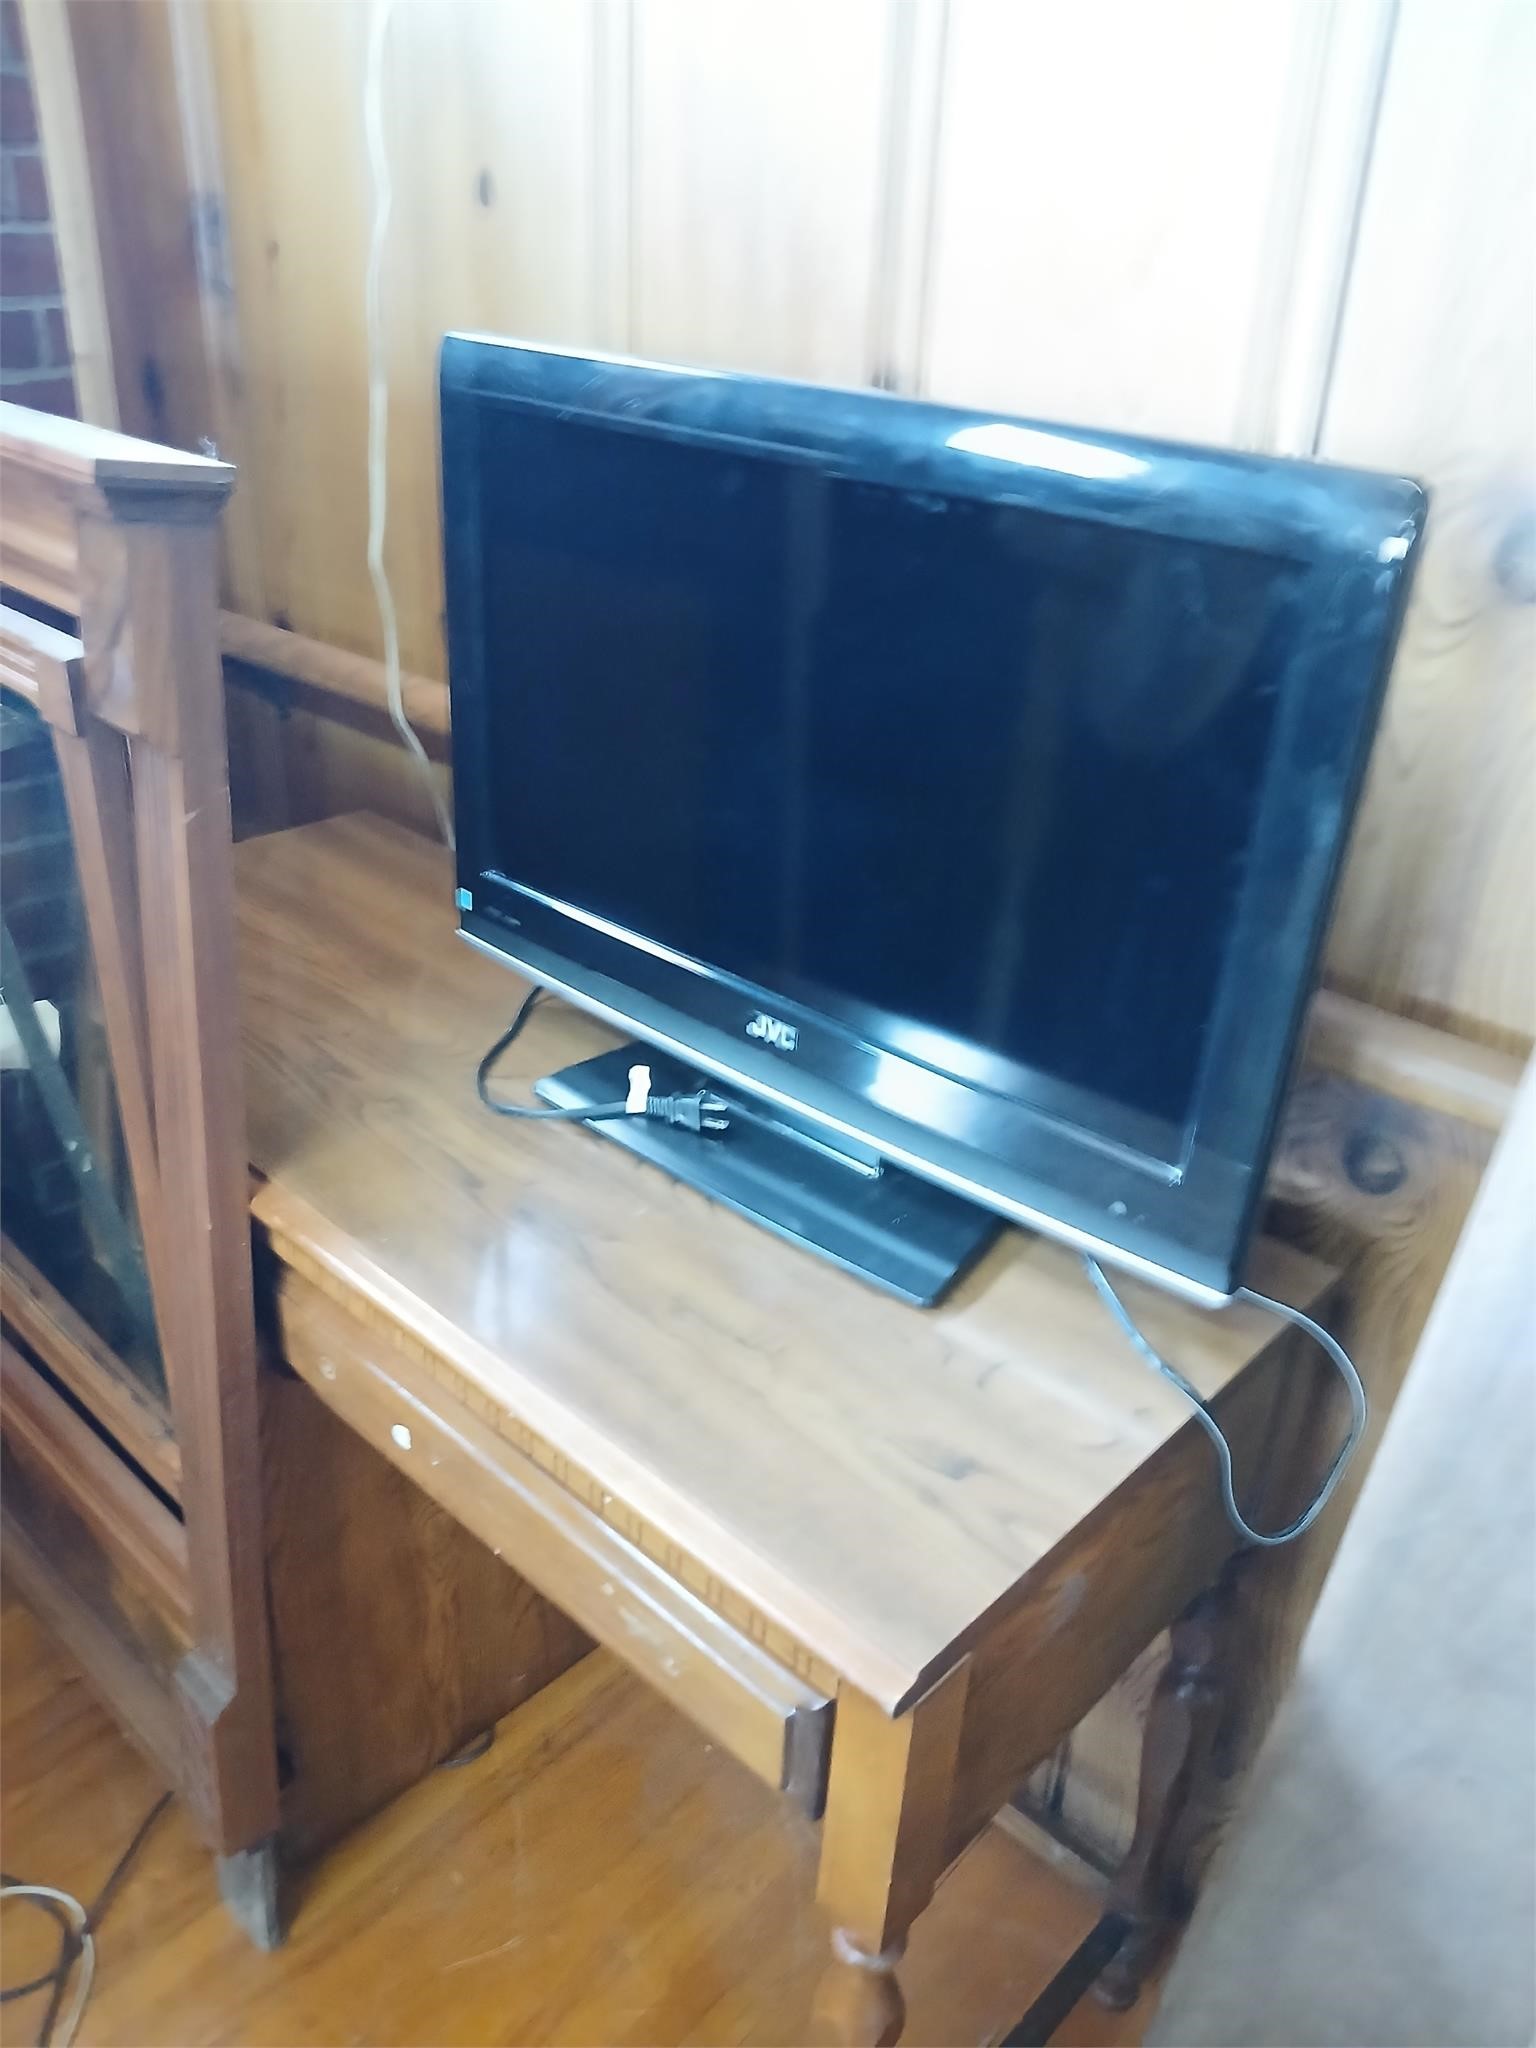 32" LCD TV